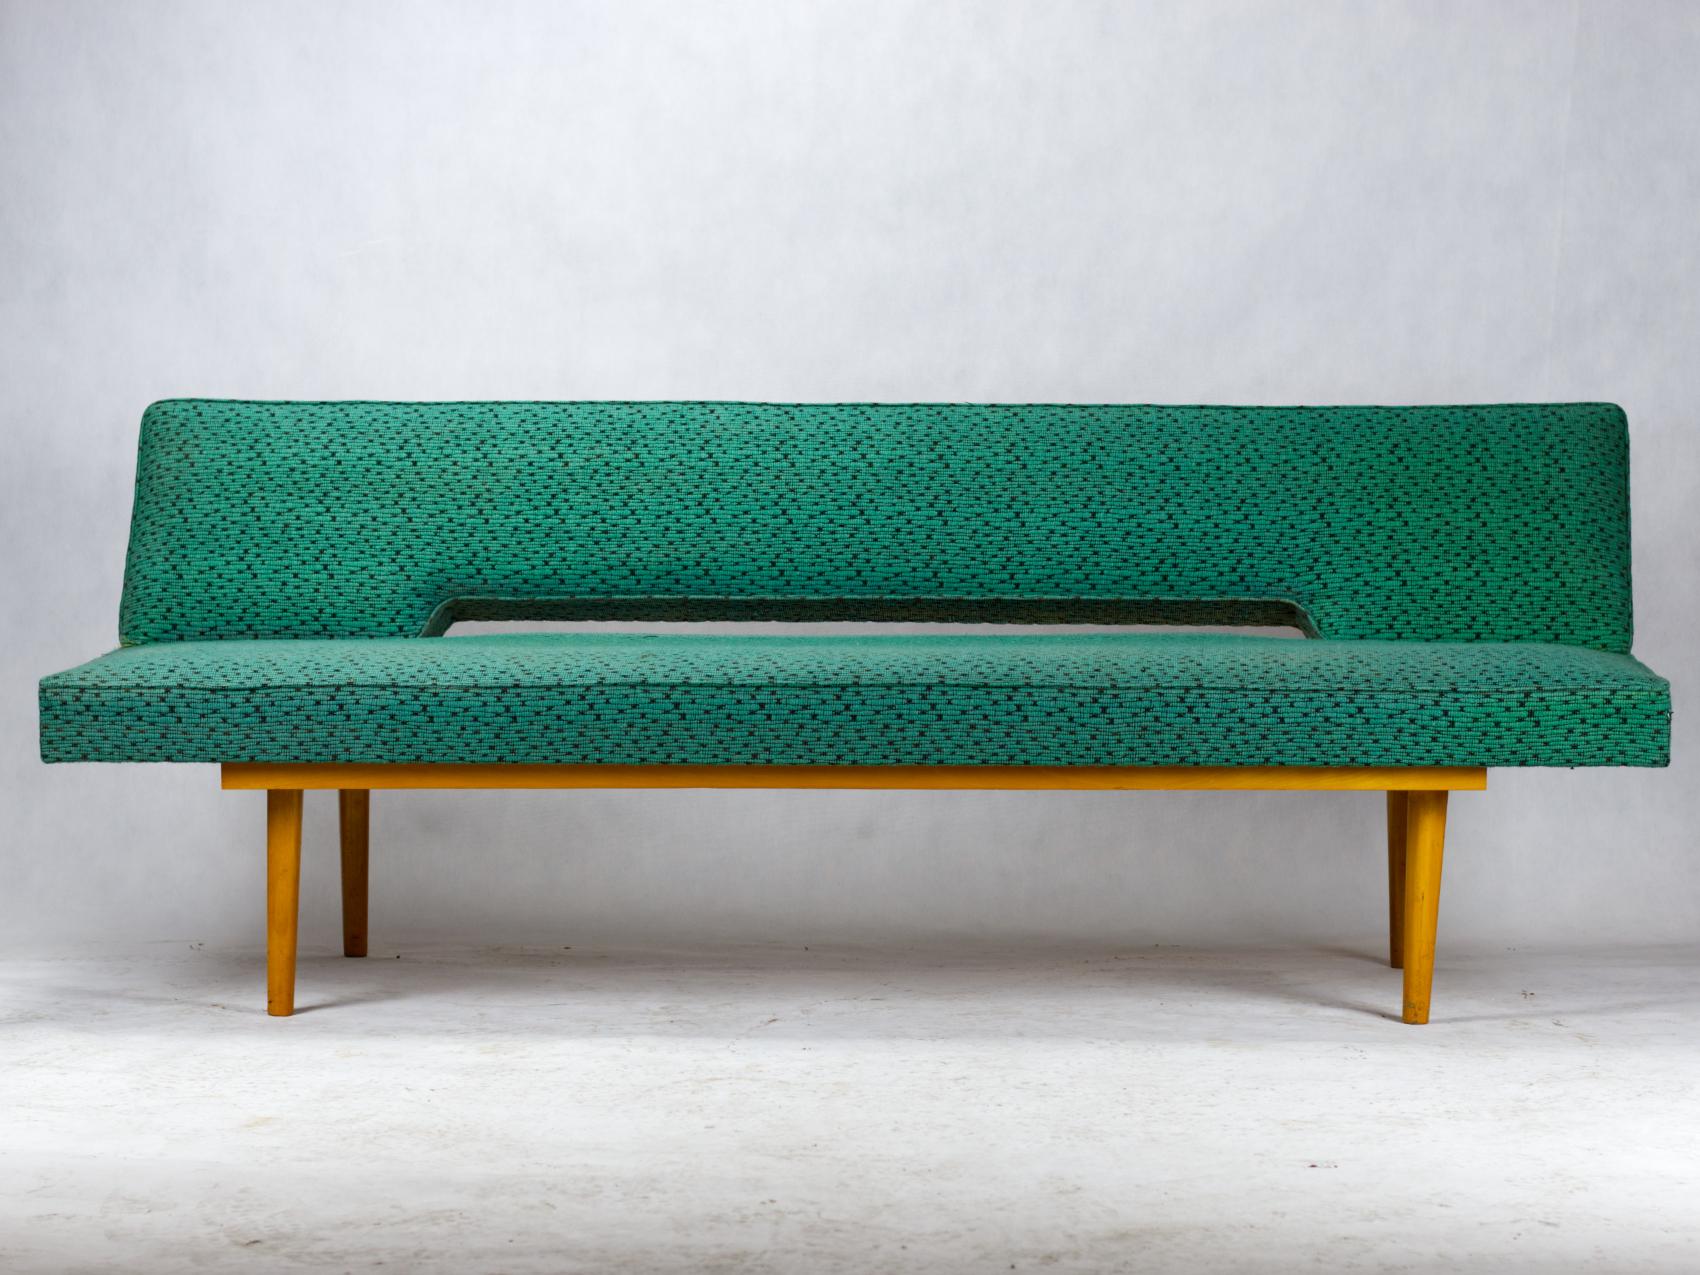 Dieses Sofa wurde von Miroslav Navratil in den 1960er Jahren für Interier Praha in der Tschechoslowakei entworfen. Das Gestell besteht aus Buche und ist mit dem grünen Originalstoff bezogen. Es lässt sich leicht zu einem 90 cm breiten Bett